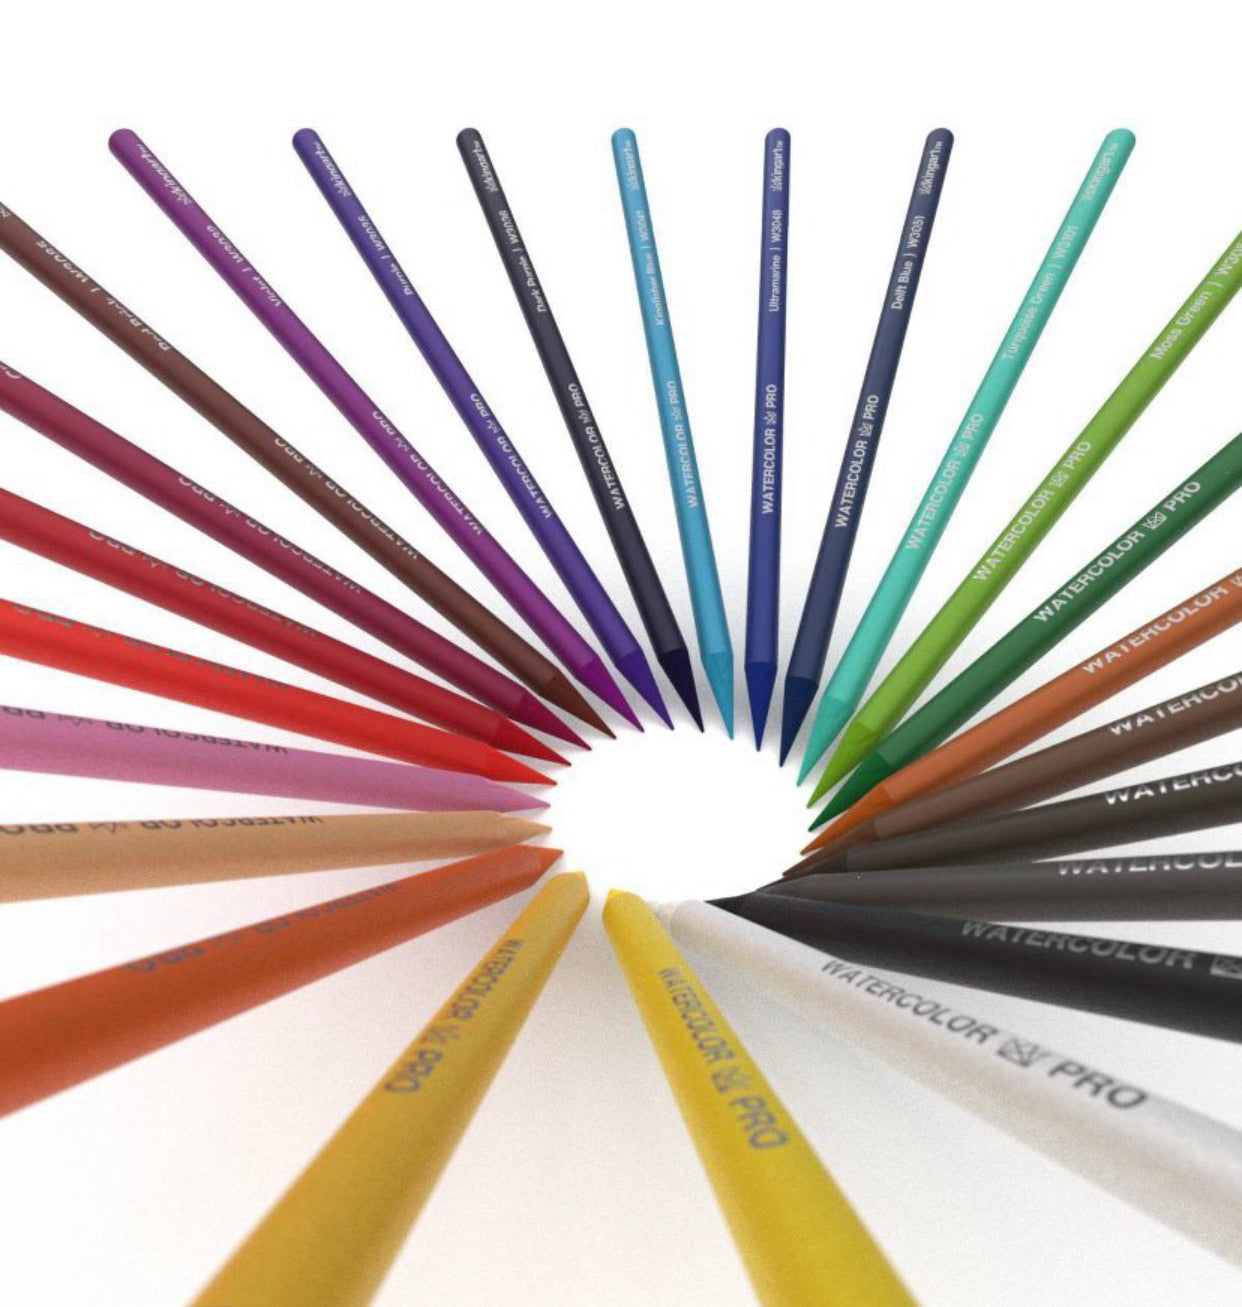 Kingart Soft Core Colored Pencils Set of 24 Unique Vibrant Colors